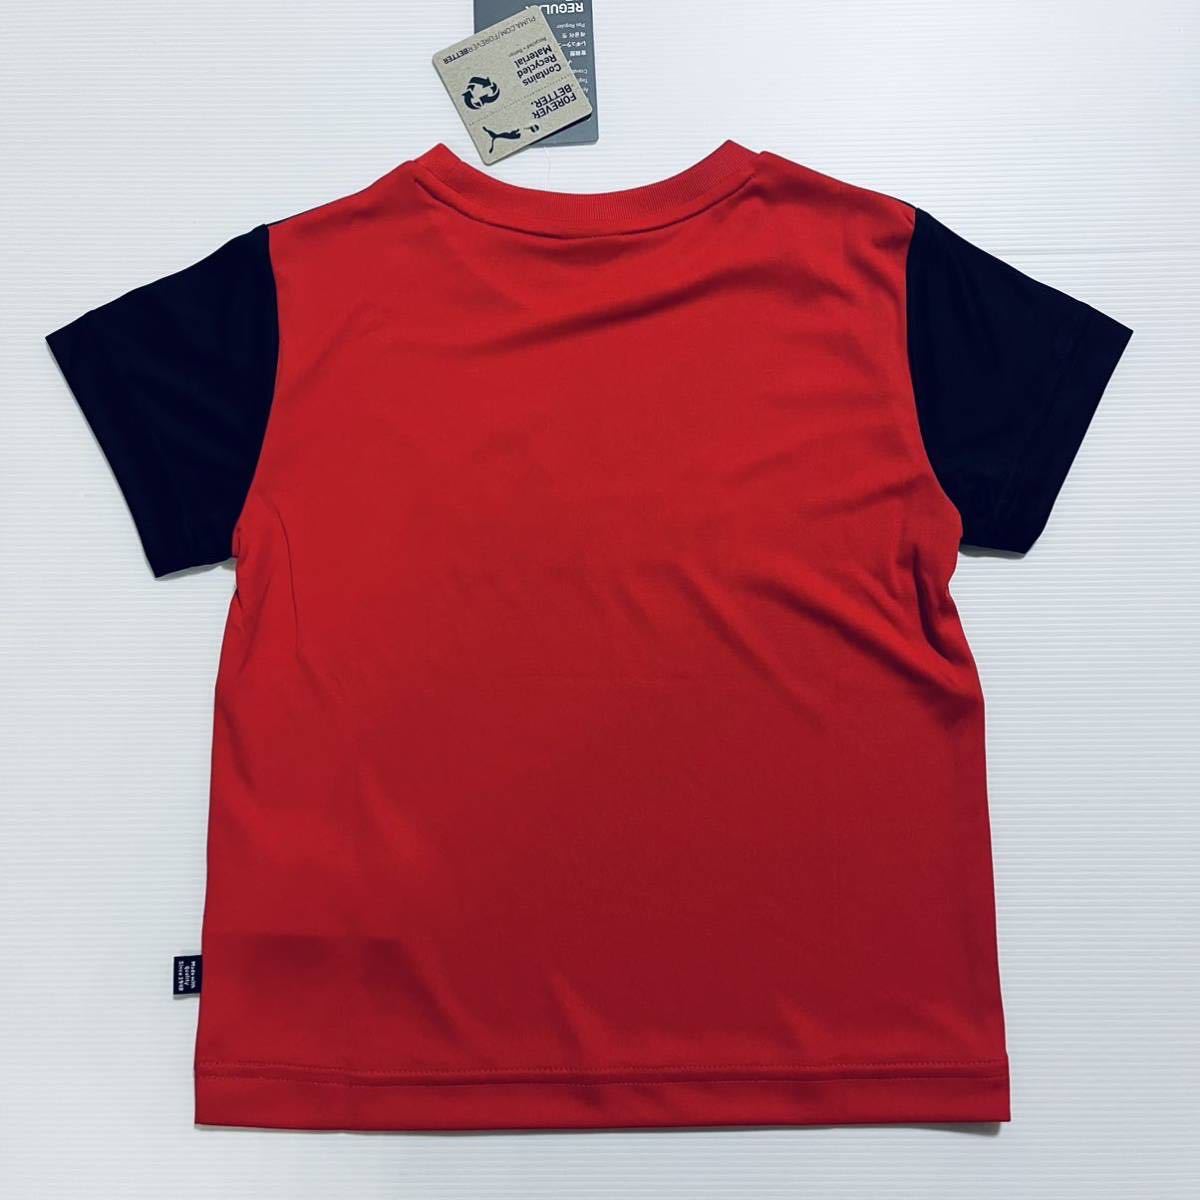 130cm 定価3,960円 プーマ キッズ 子供 ボーイズ Tシャツ パンツ 上下セット サッカー 春夏 軽量 ドライ ハーフパンツ 黒 赤 ロゴ 新品の画像3